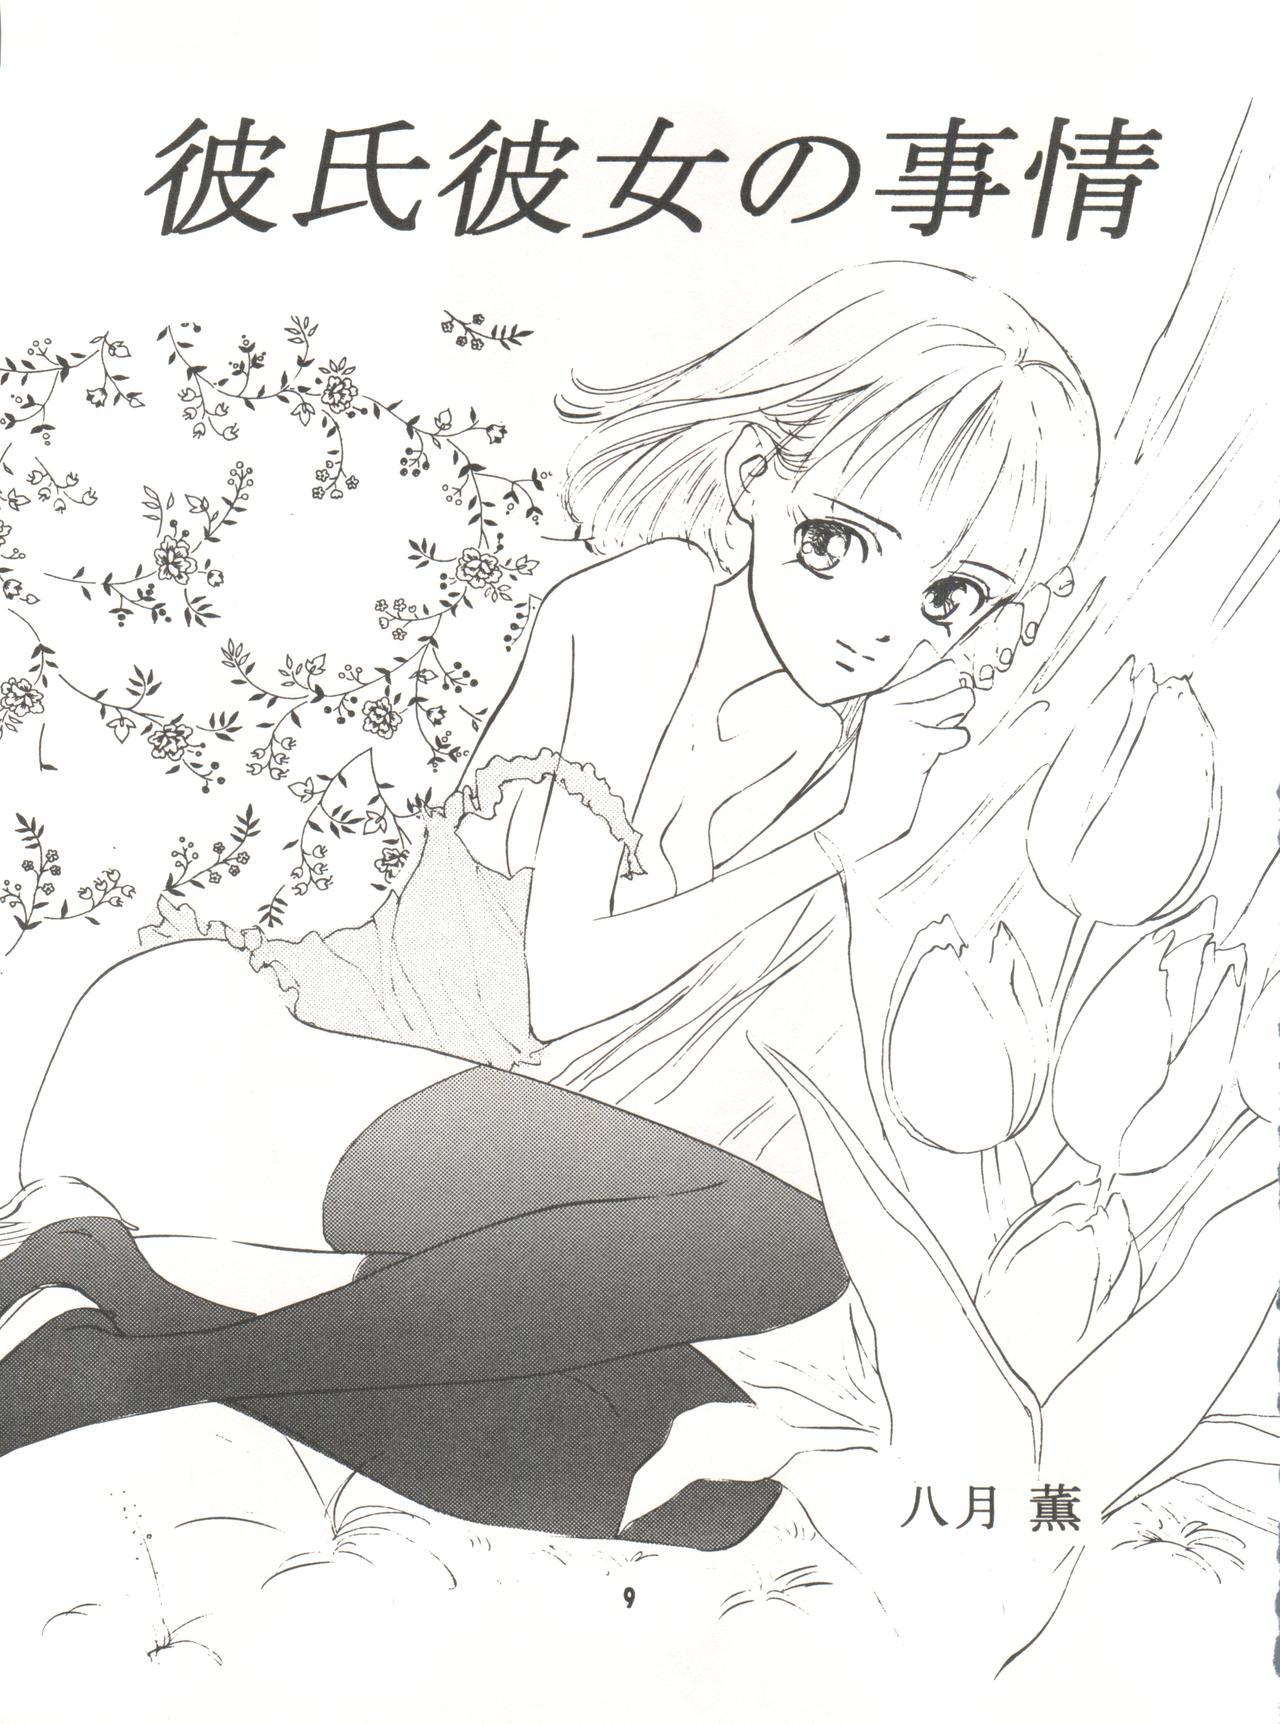 Young Wanpaku Anime Vol. 9 Kare Kano Tokushuu Kanojo wa... - Kare kano Dicks - Page 11